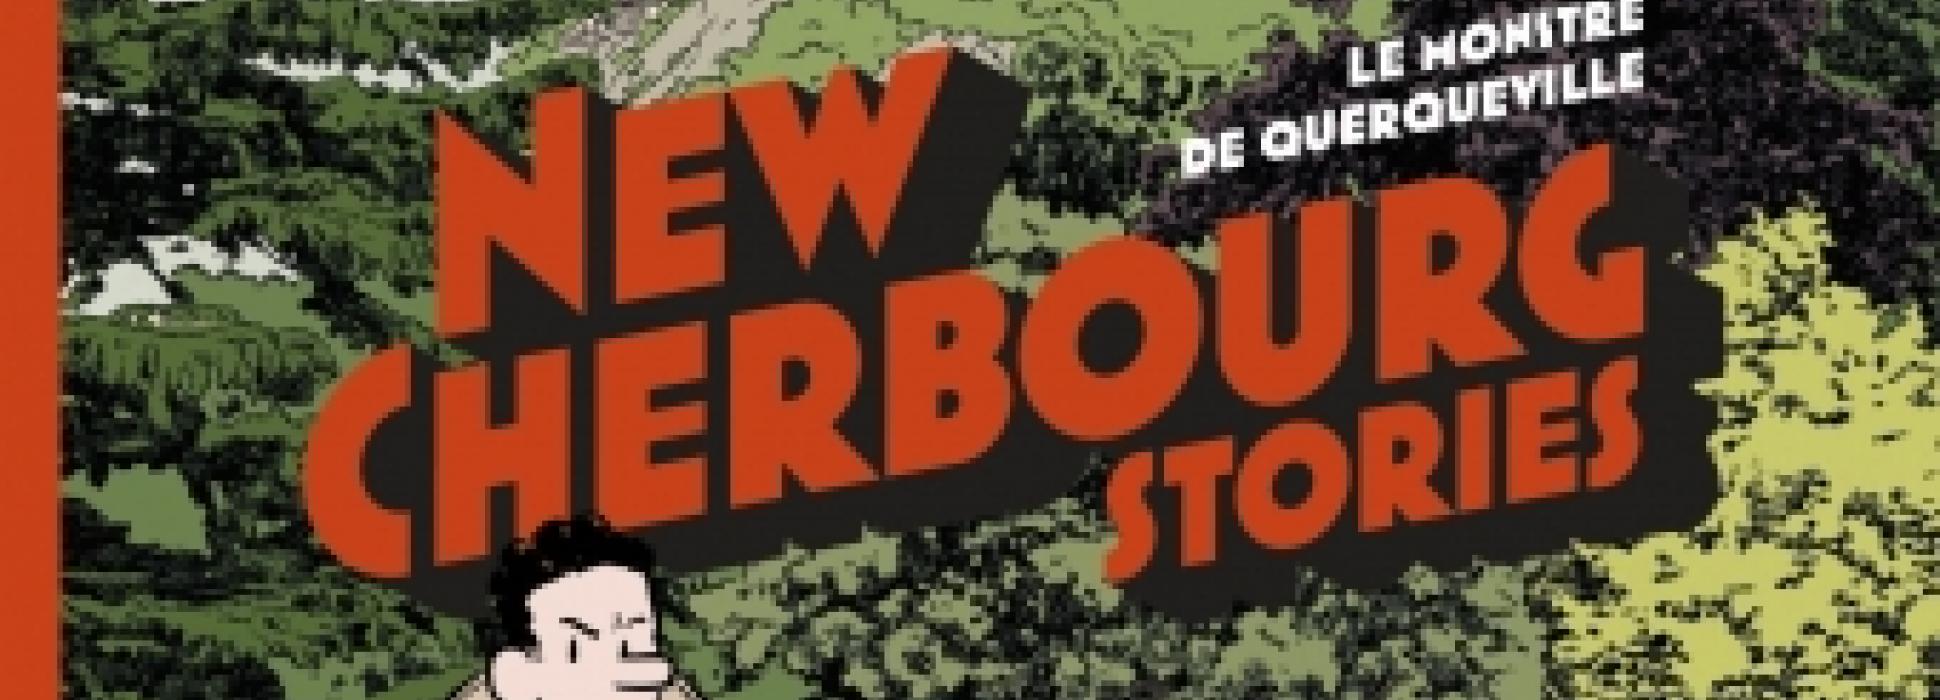 La BD New Cherbourg Stories fait un carton à Cherbourg